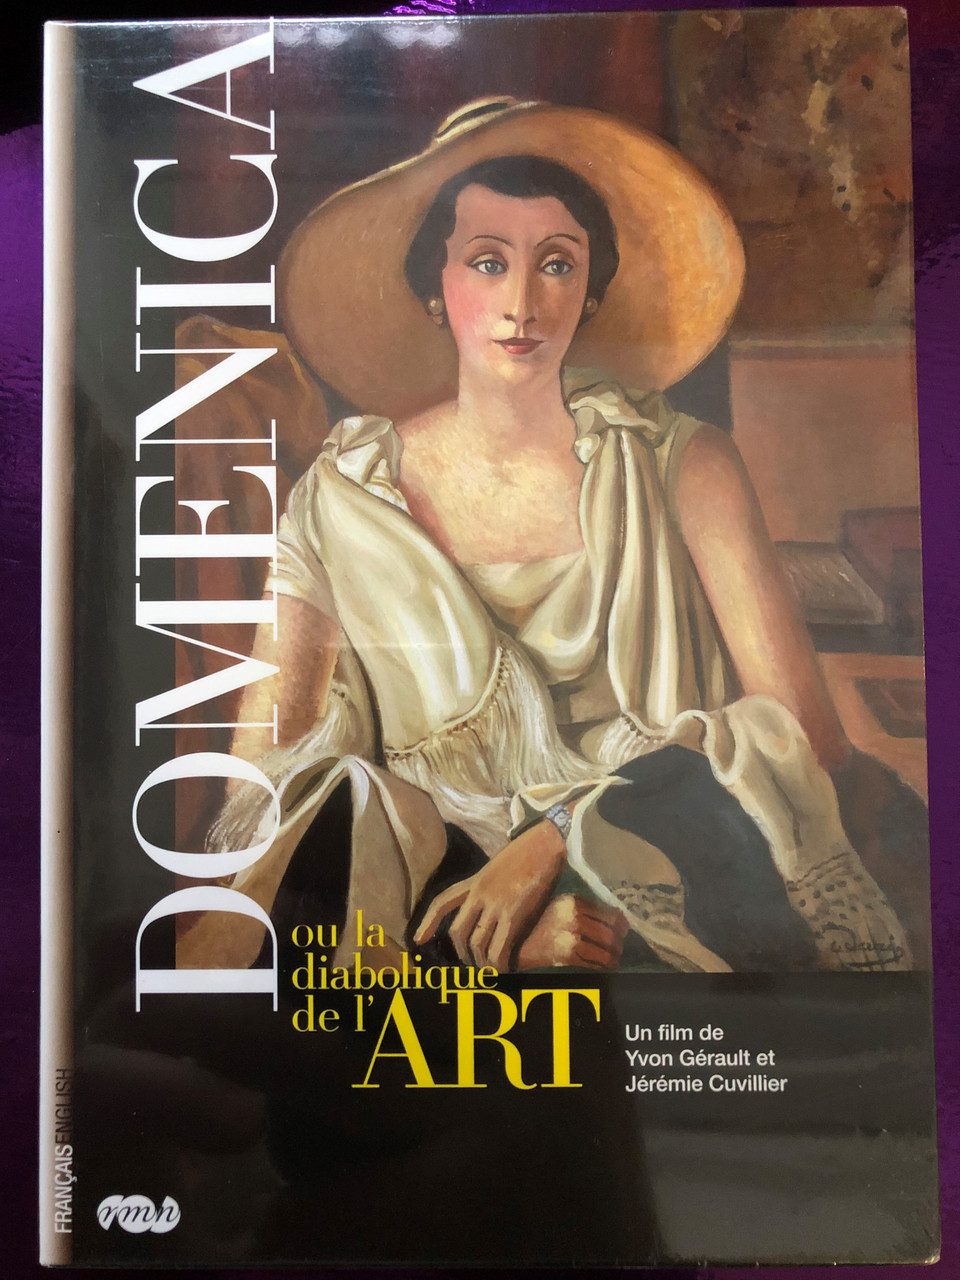 Domenica - ou la diabolique de l'Art DVD 2009 Domenica: Art's fiendish  woman / Directed by Yvon Gérault, Jérémie Cuvillier / Documentary -  bibleinmylanguage